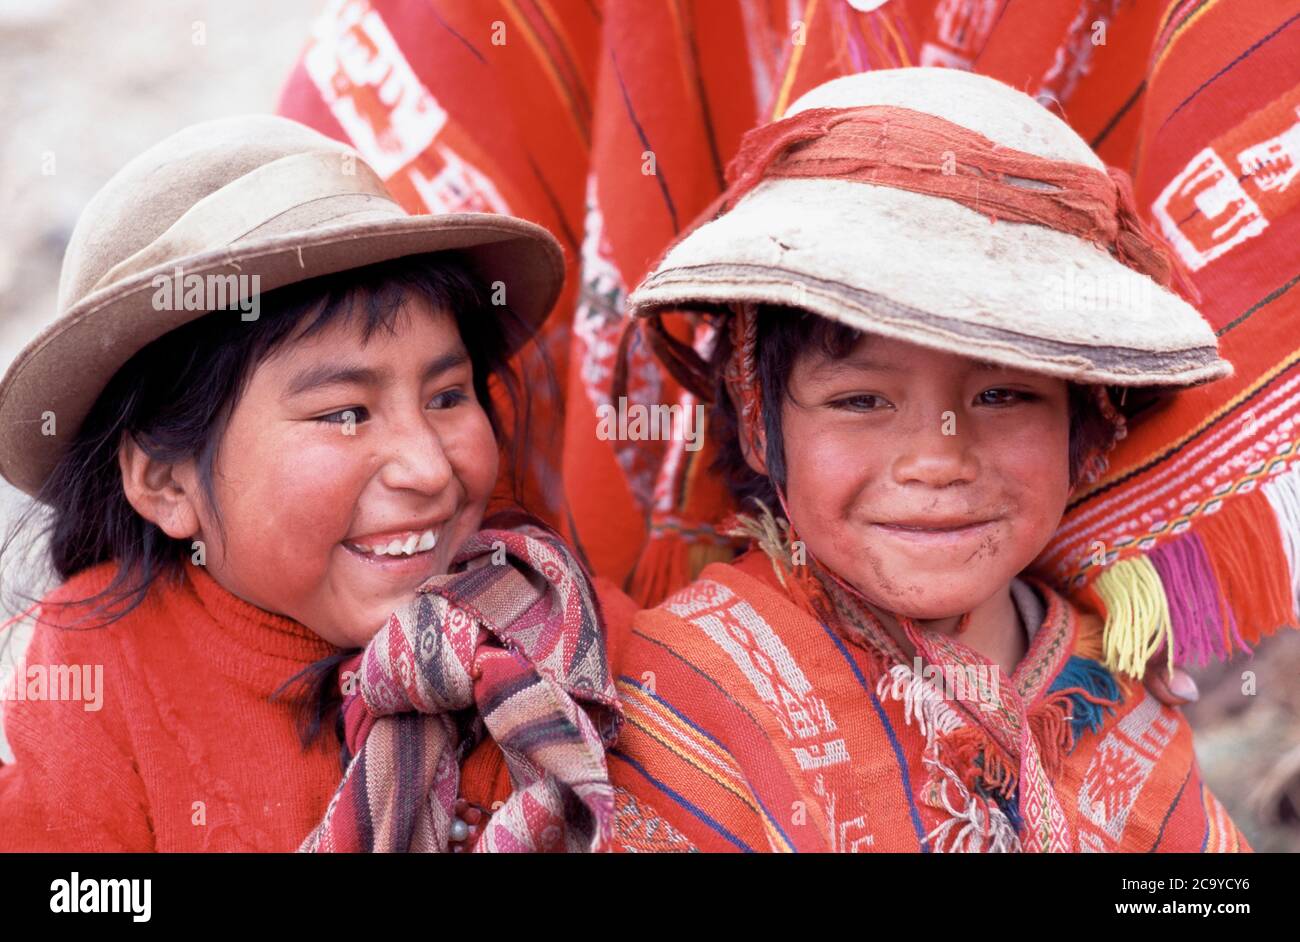 Peruvian Children smiling in traditional costume., Cusco, Peru, South America Stock Photo